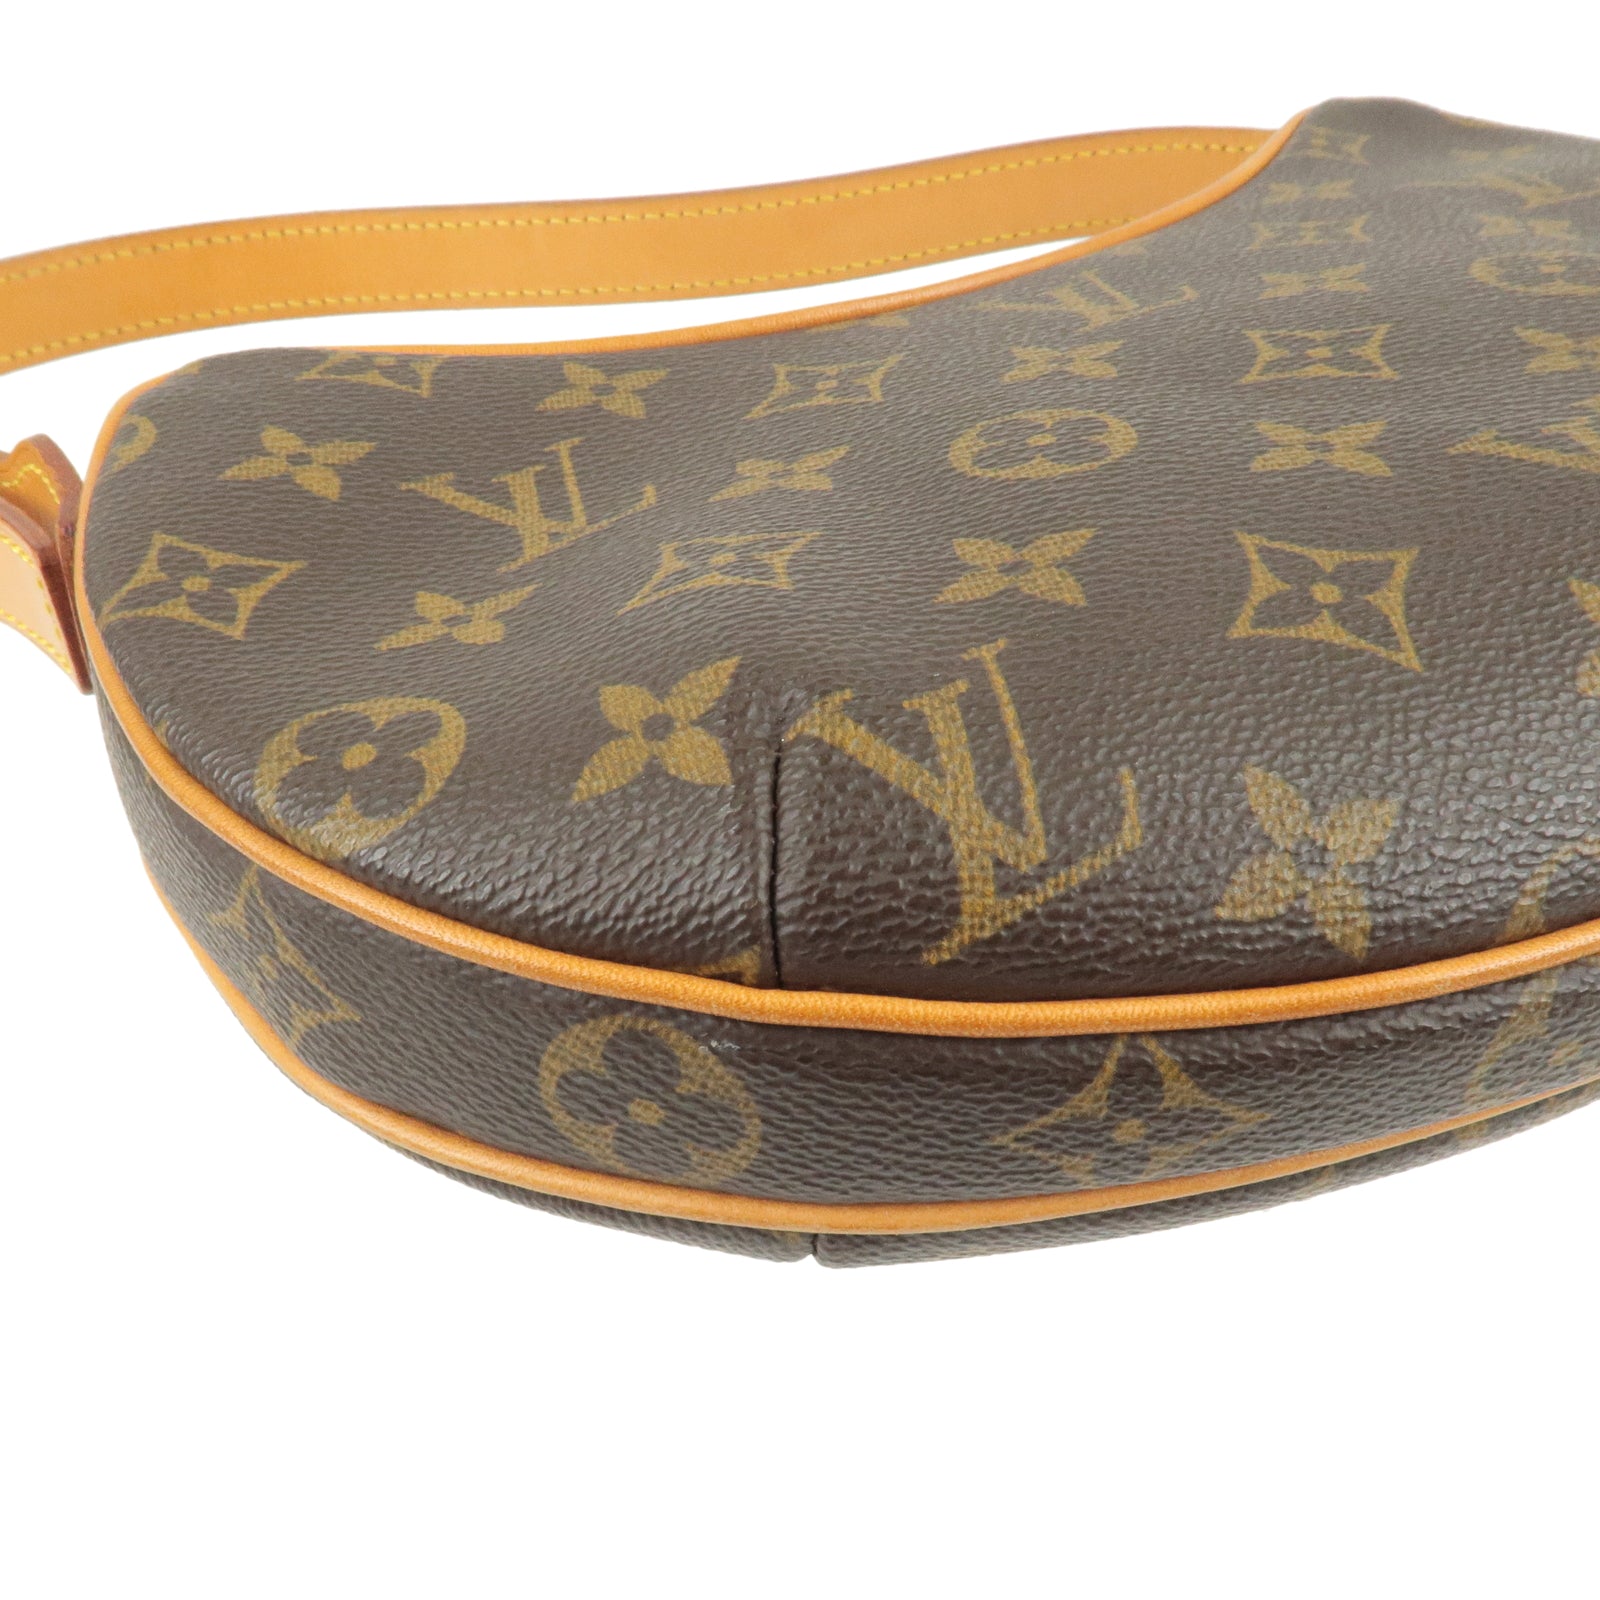 Bag - M51510 – dct - Vuitton - Louis Vuitton Citadines large model handbag  in brown monogram leather - Croissant - ep_vintage luxury Store - Monogram  - Shoulder - Pochette - Louis